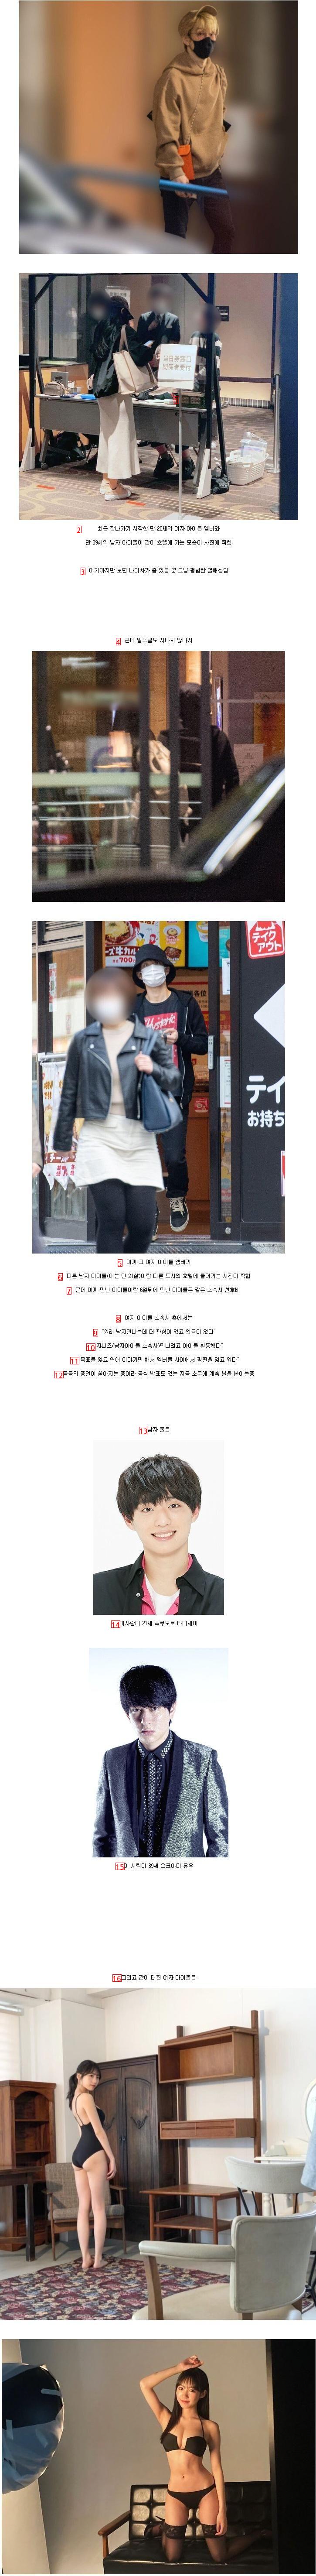 ㅇㅎ)남자 아이돌 덮밥을 실천한 2000년생 여자 아이돌